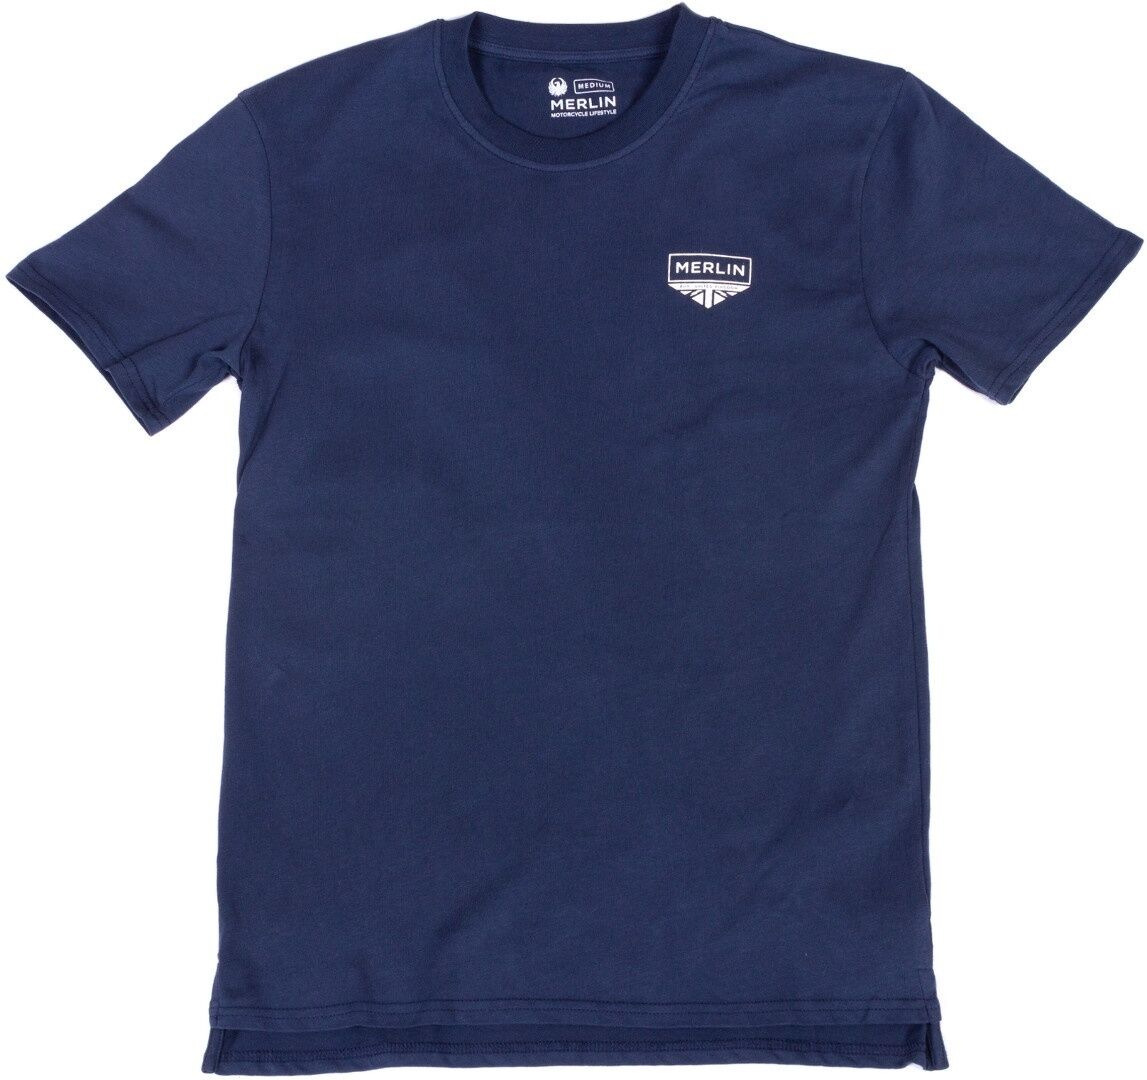 Merlin Truro Signature Camiseta - Azul (2XL)